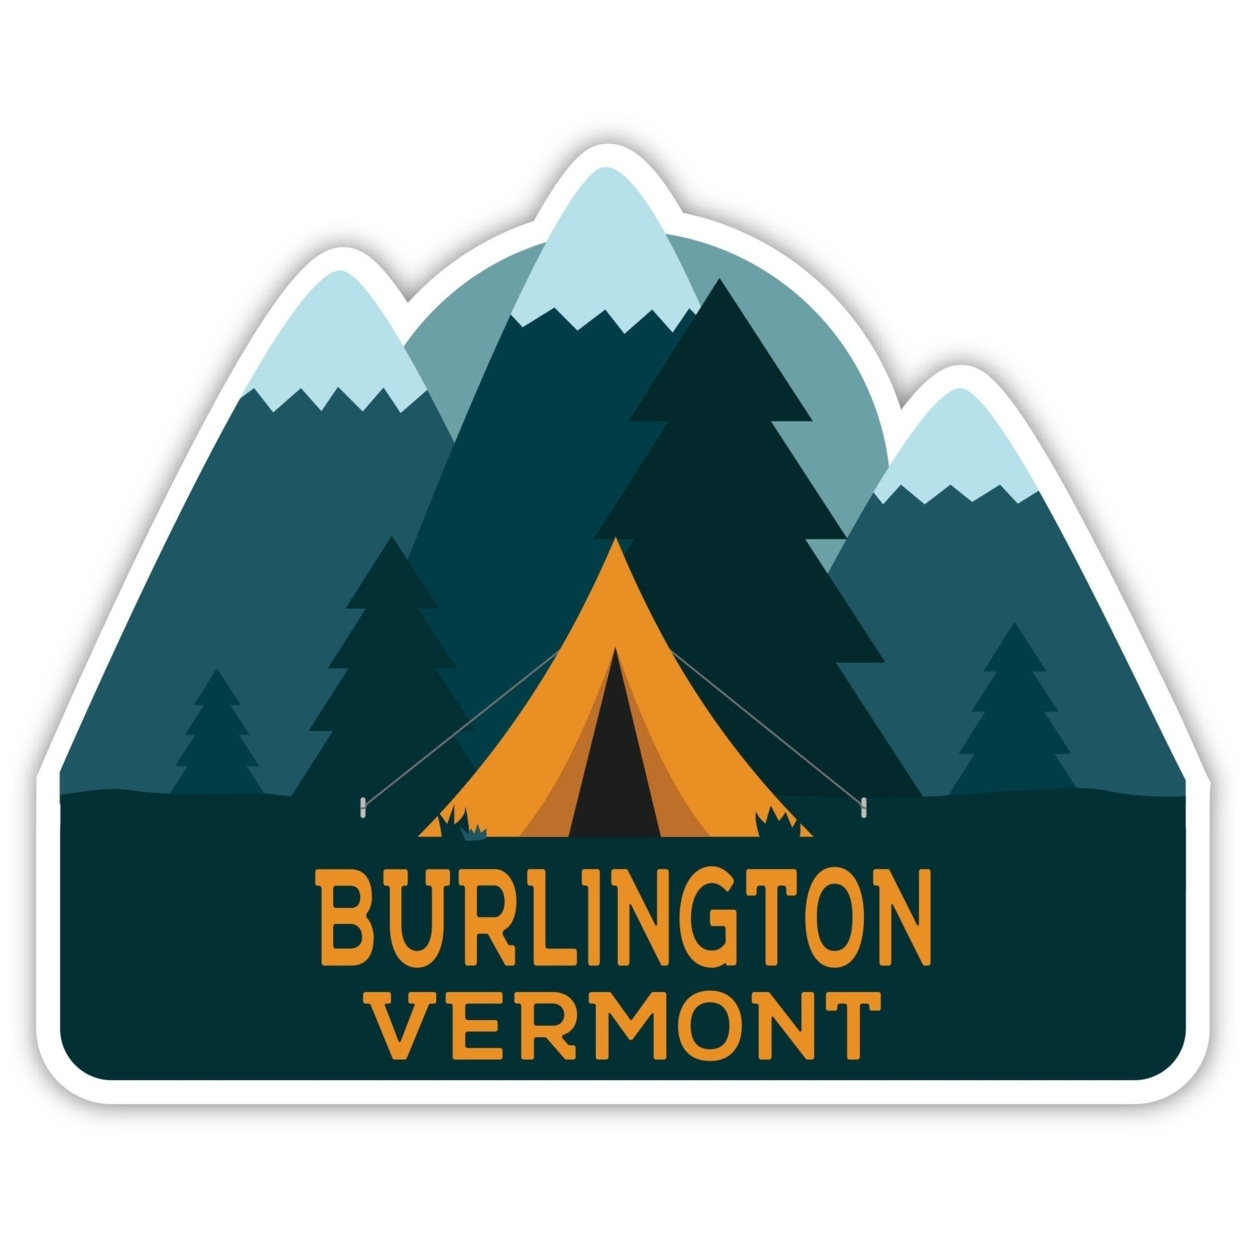 Burlington Vermont Souvenir Decorative Stickers (Choose Theme And Size) - 4-Pack, 10-Inch, Tent